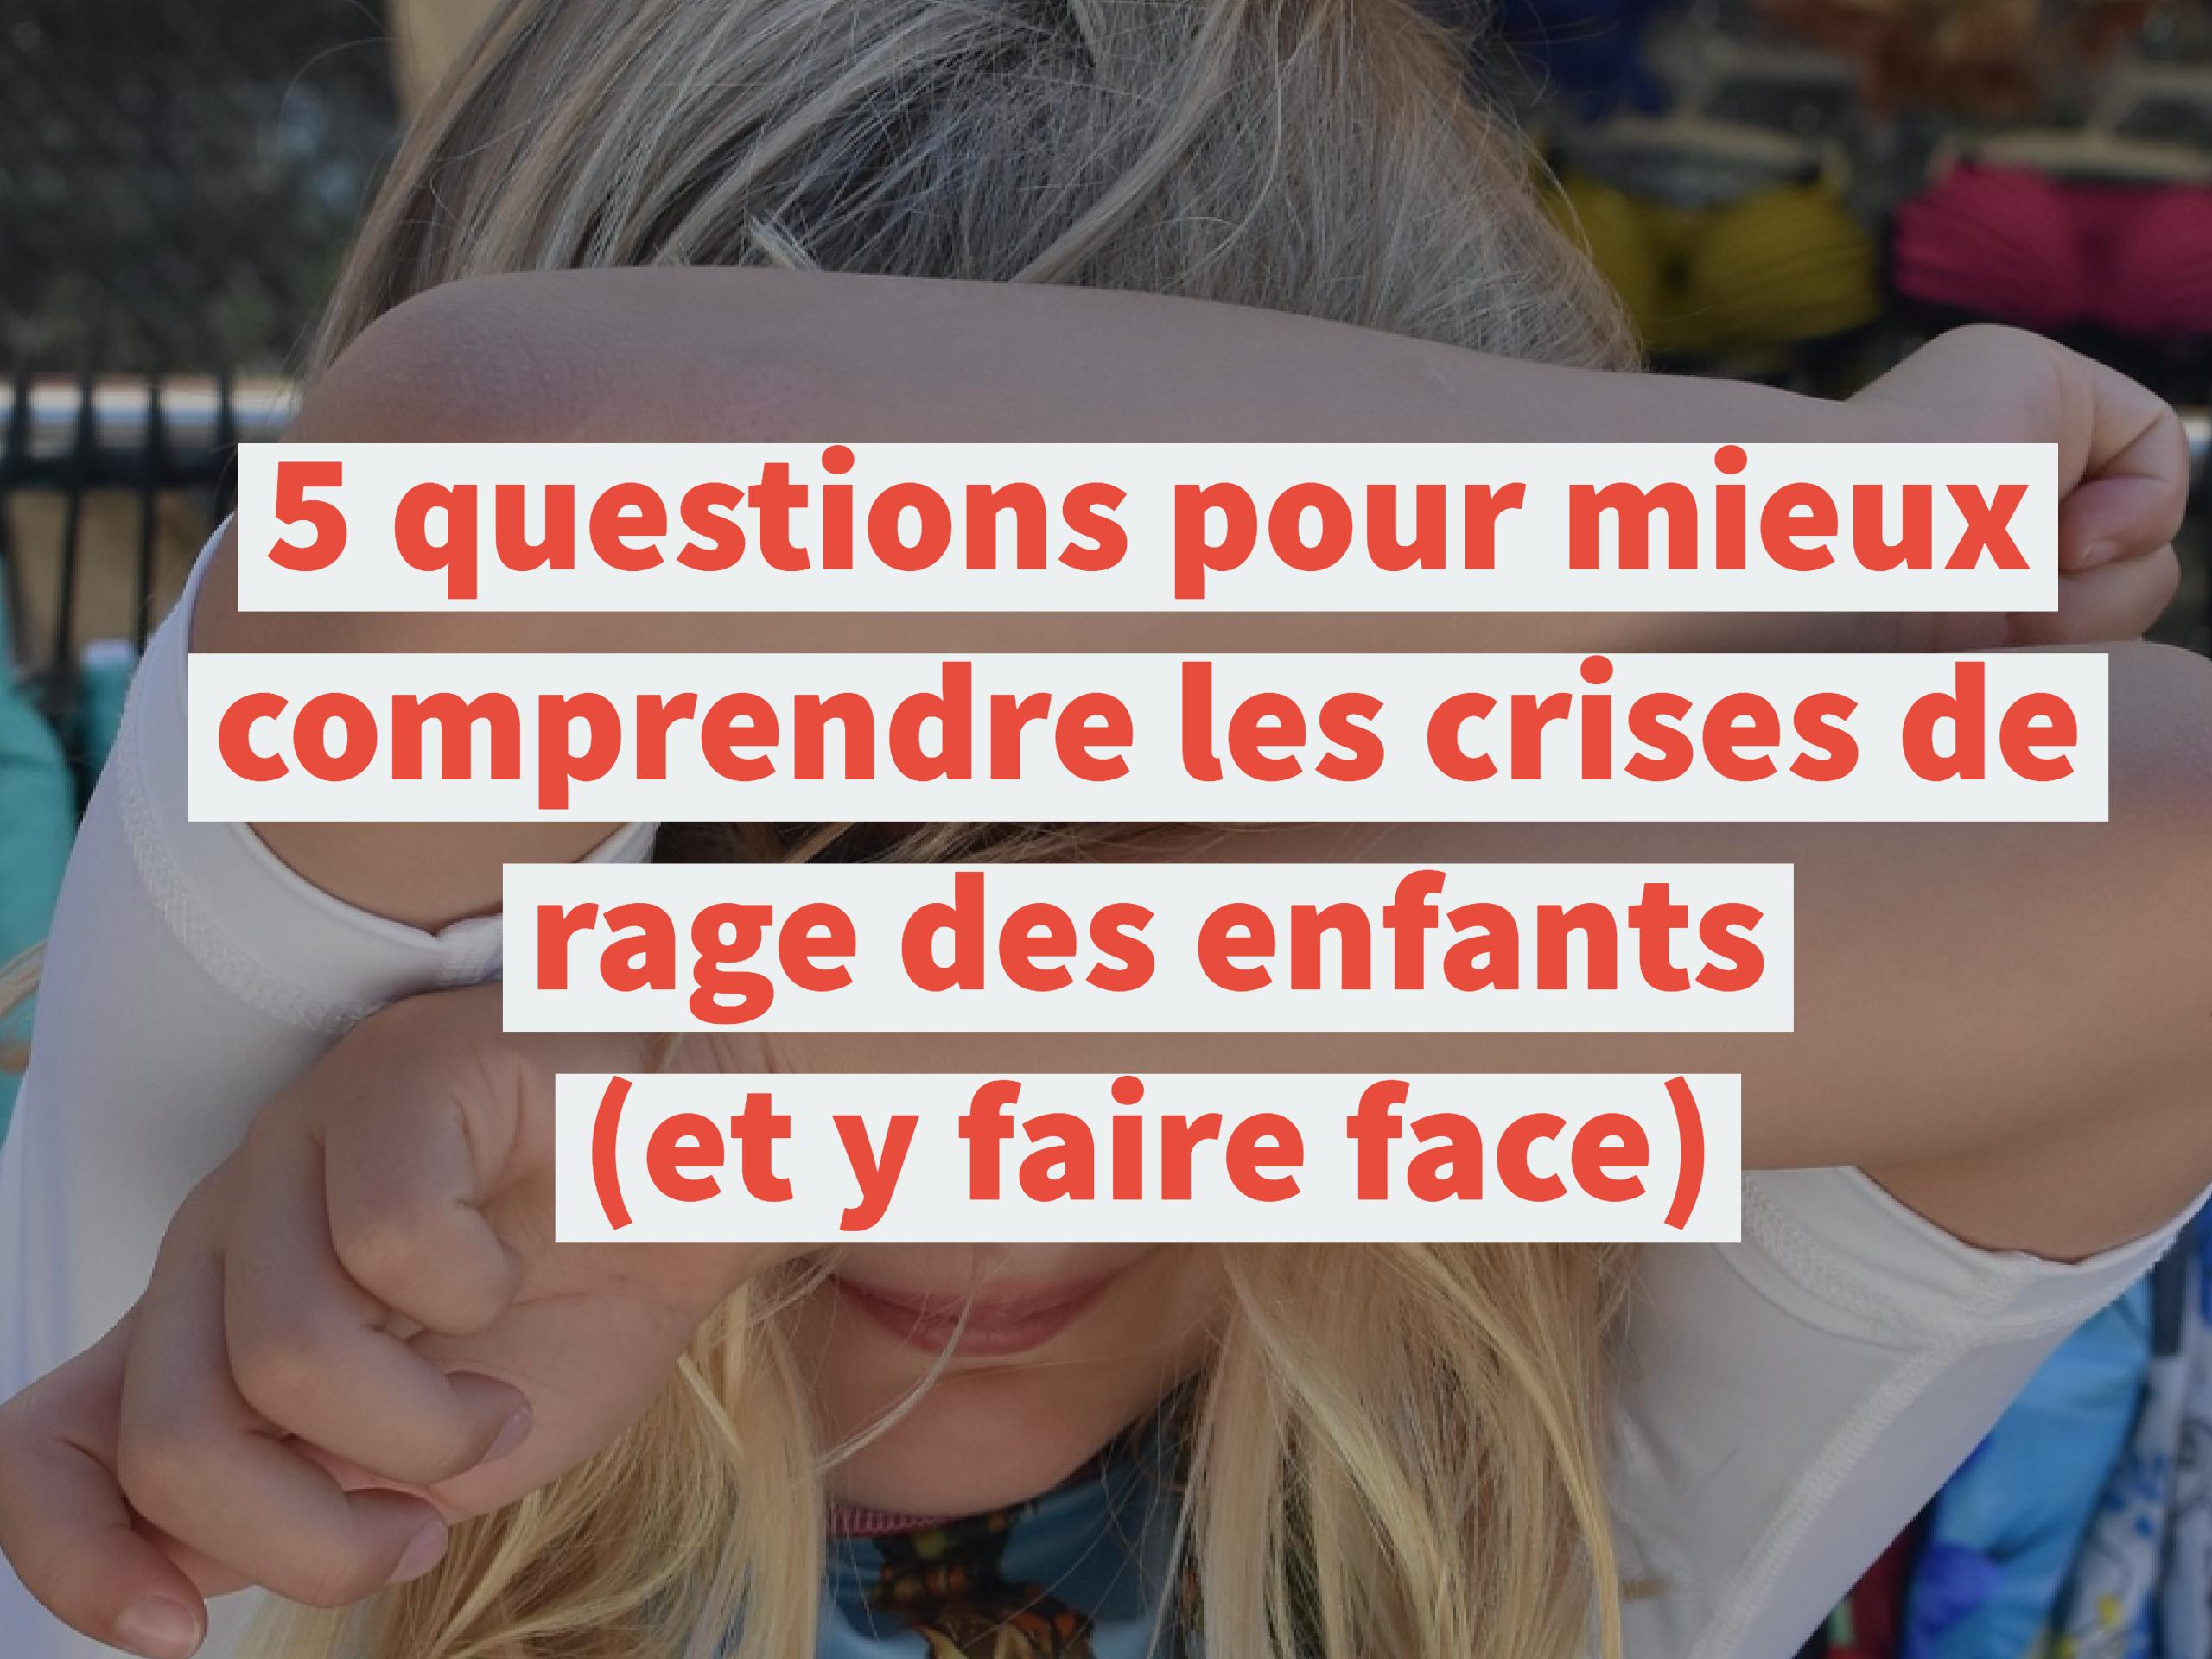 5 questions pour mieux comprendre les crises de rage des enfants (et y faire face)